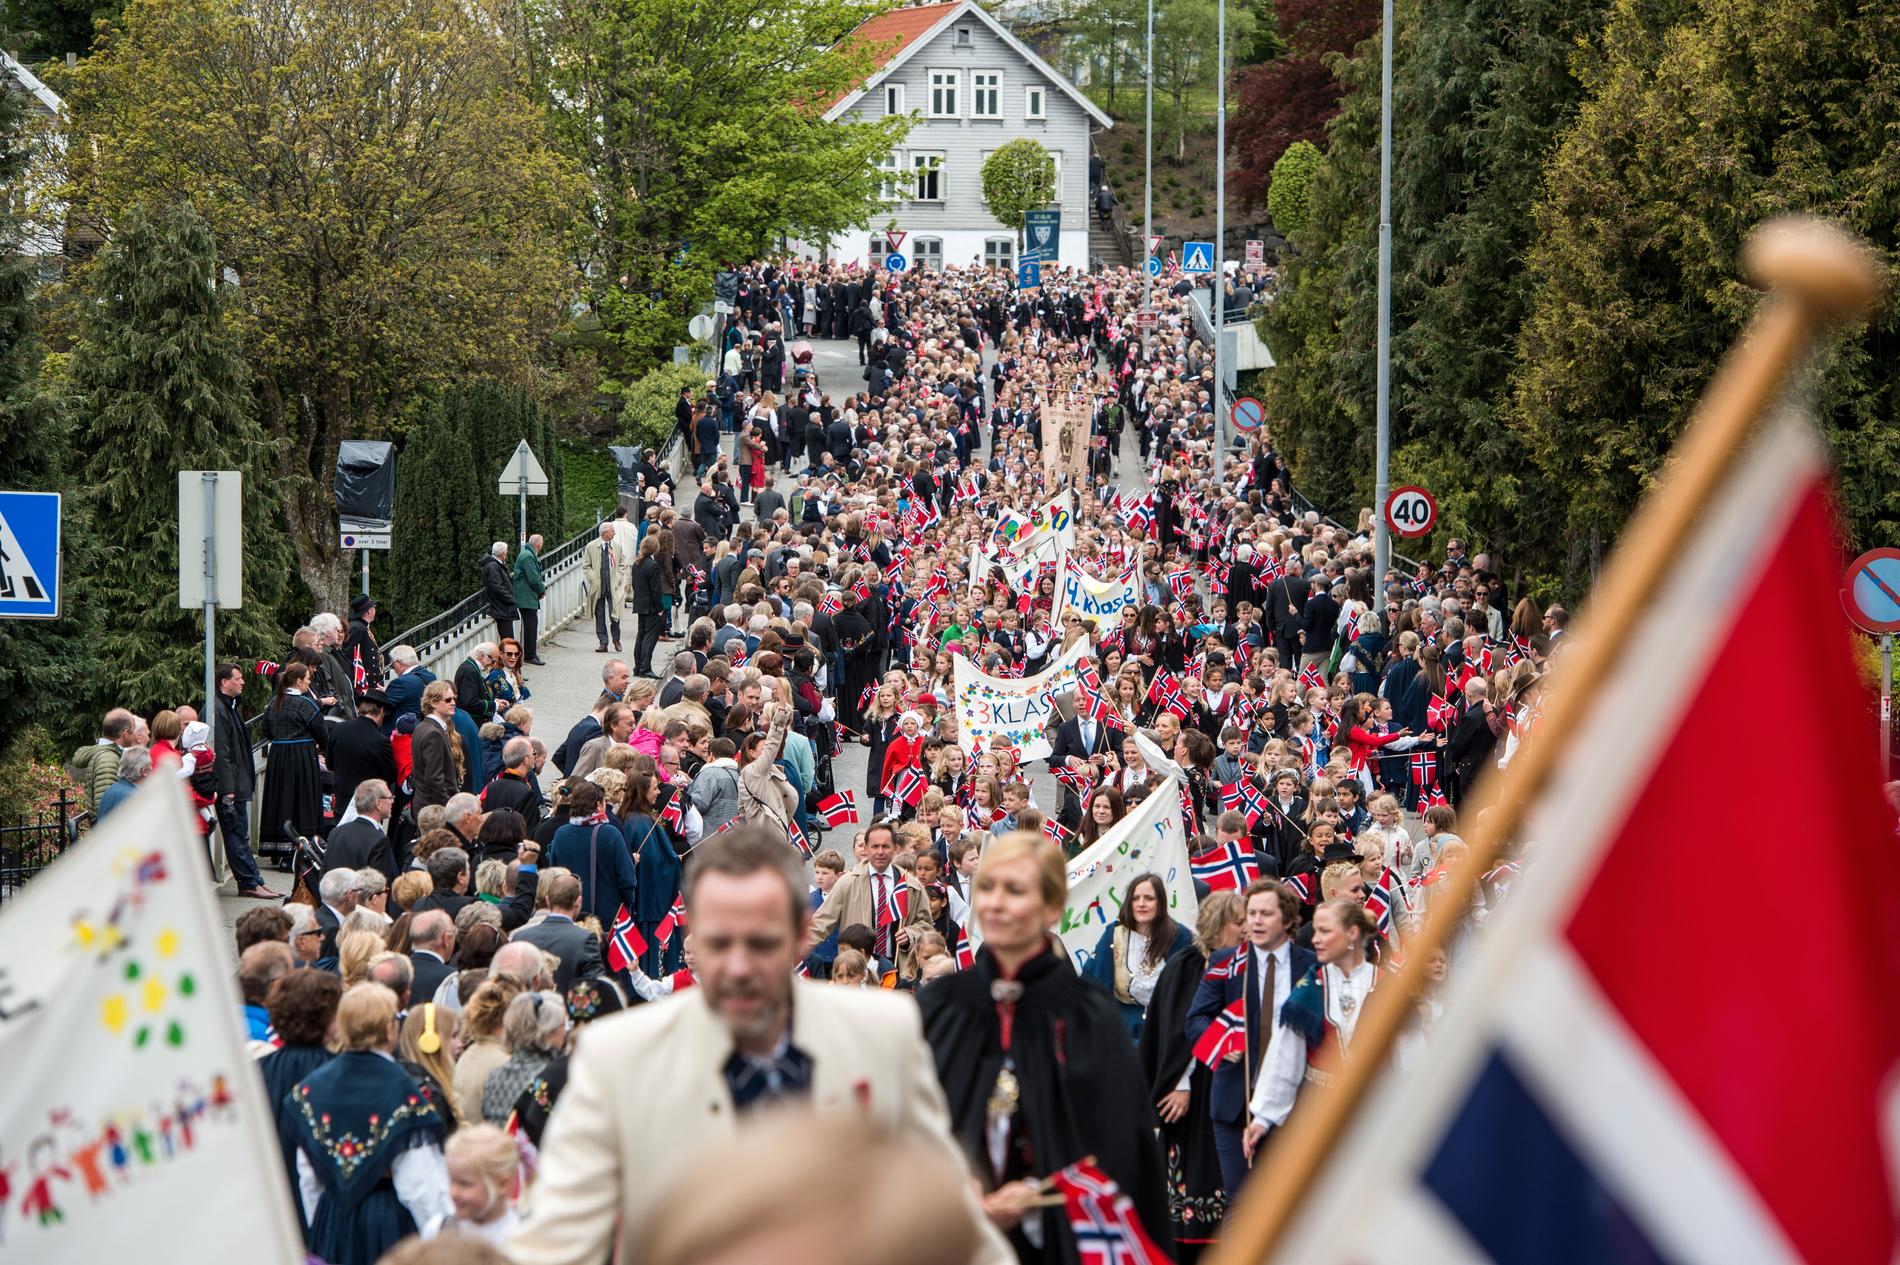  «Hva er grunnen til at vi i Norge går sammen fredfullt og noenlunde i takt 17. mai?» spør Rune Askeland.  